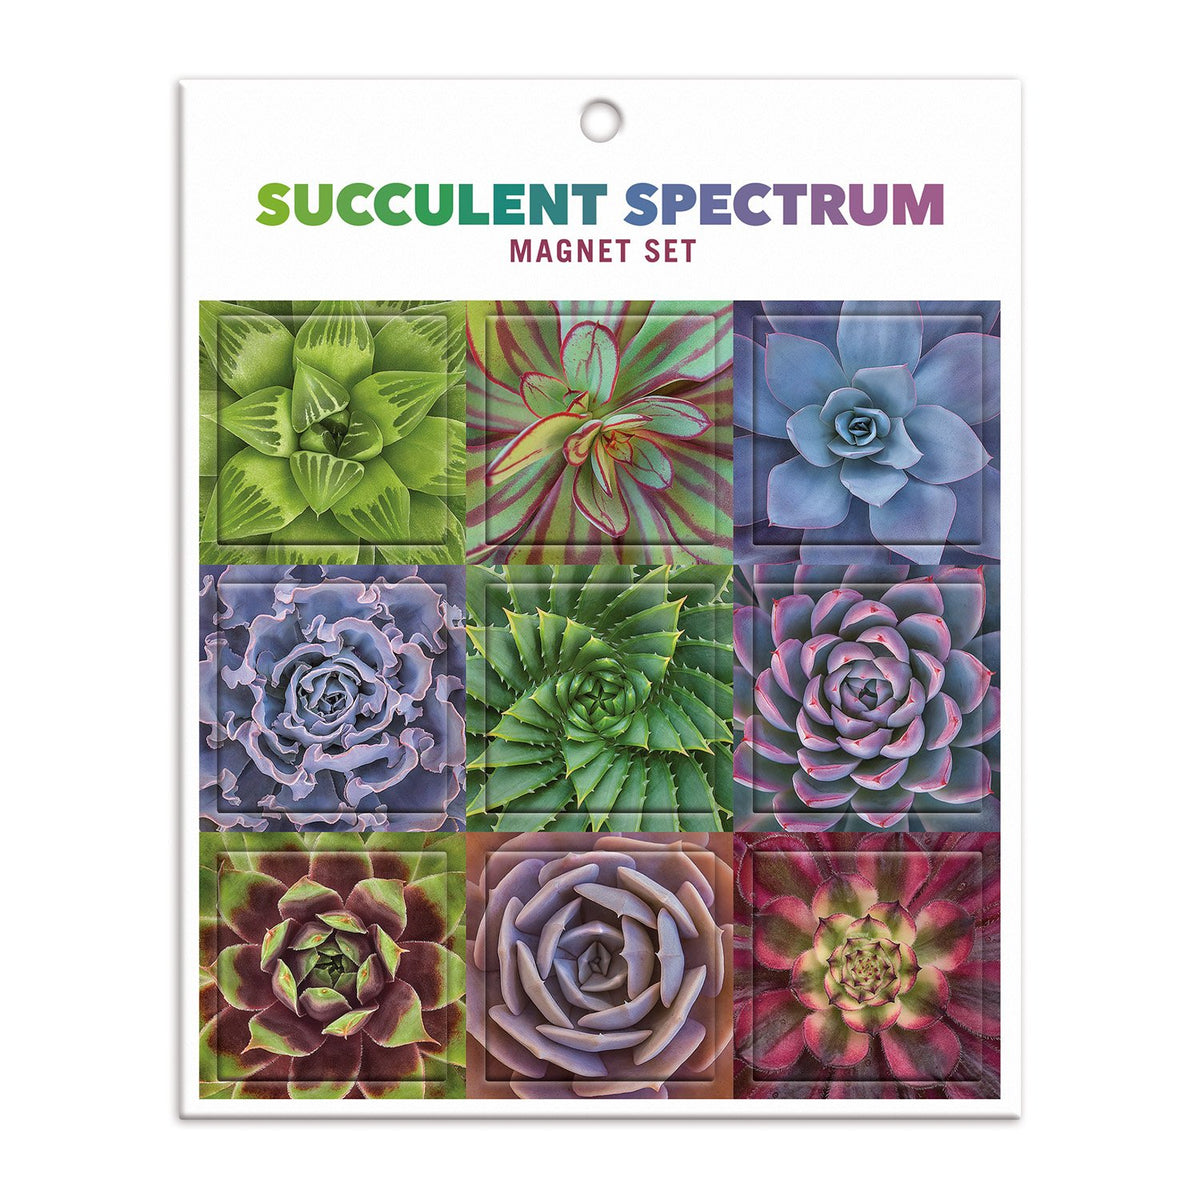 Succulent Spectrum Magnet Set Magnets Troy Litten Collection 